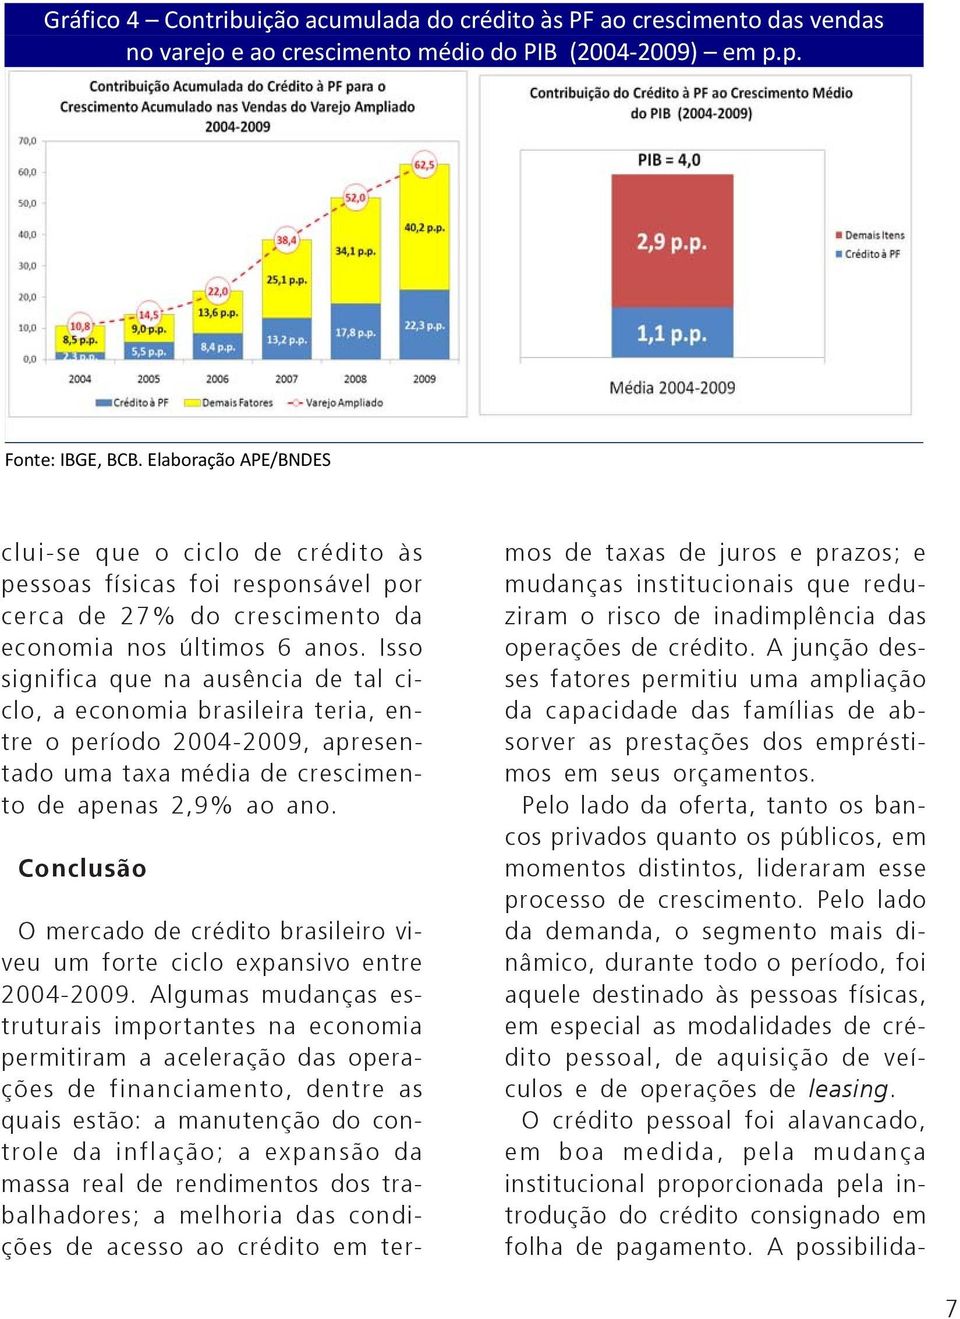 Isso significa que na ausência de tal ciclo, a economia brasileira teria, entre o período 2004-2009, apresentado uma taxa média de crescimento de apenas 2,9% ao ano.